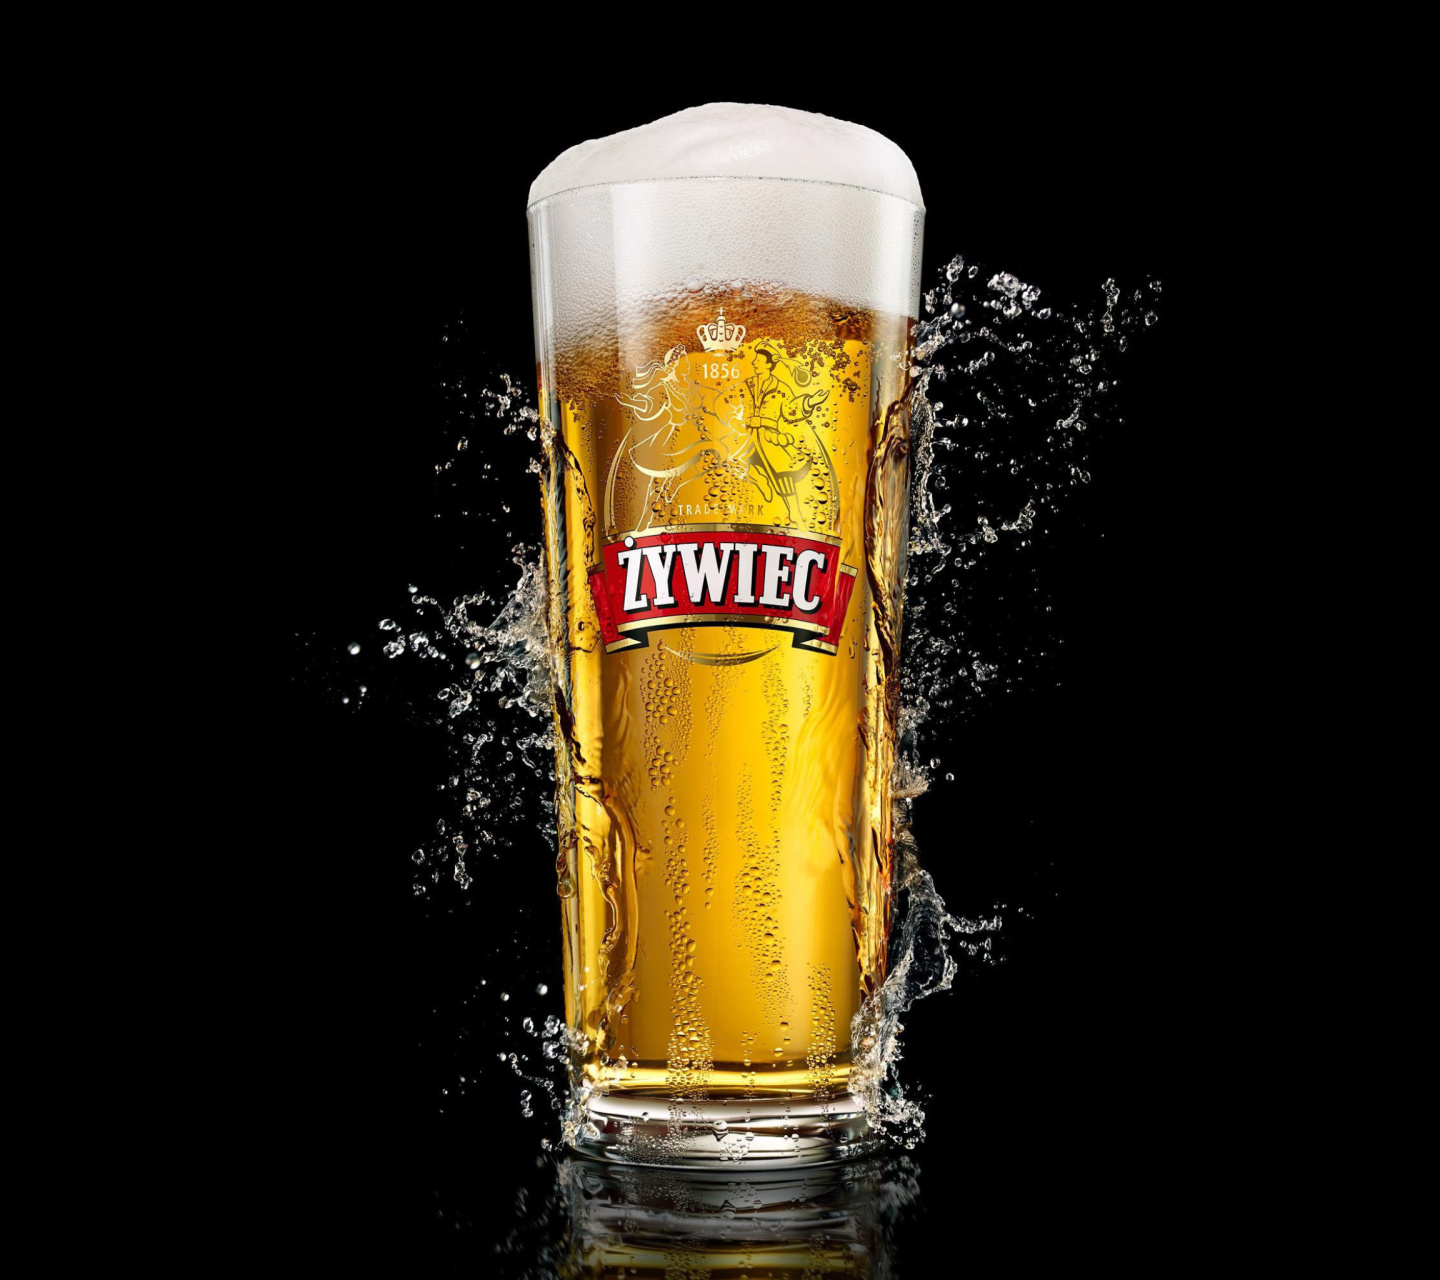 Sfondi Zywiec Beer 1440x1280